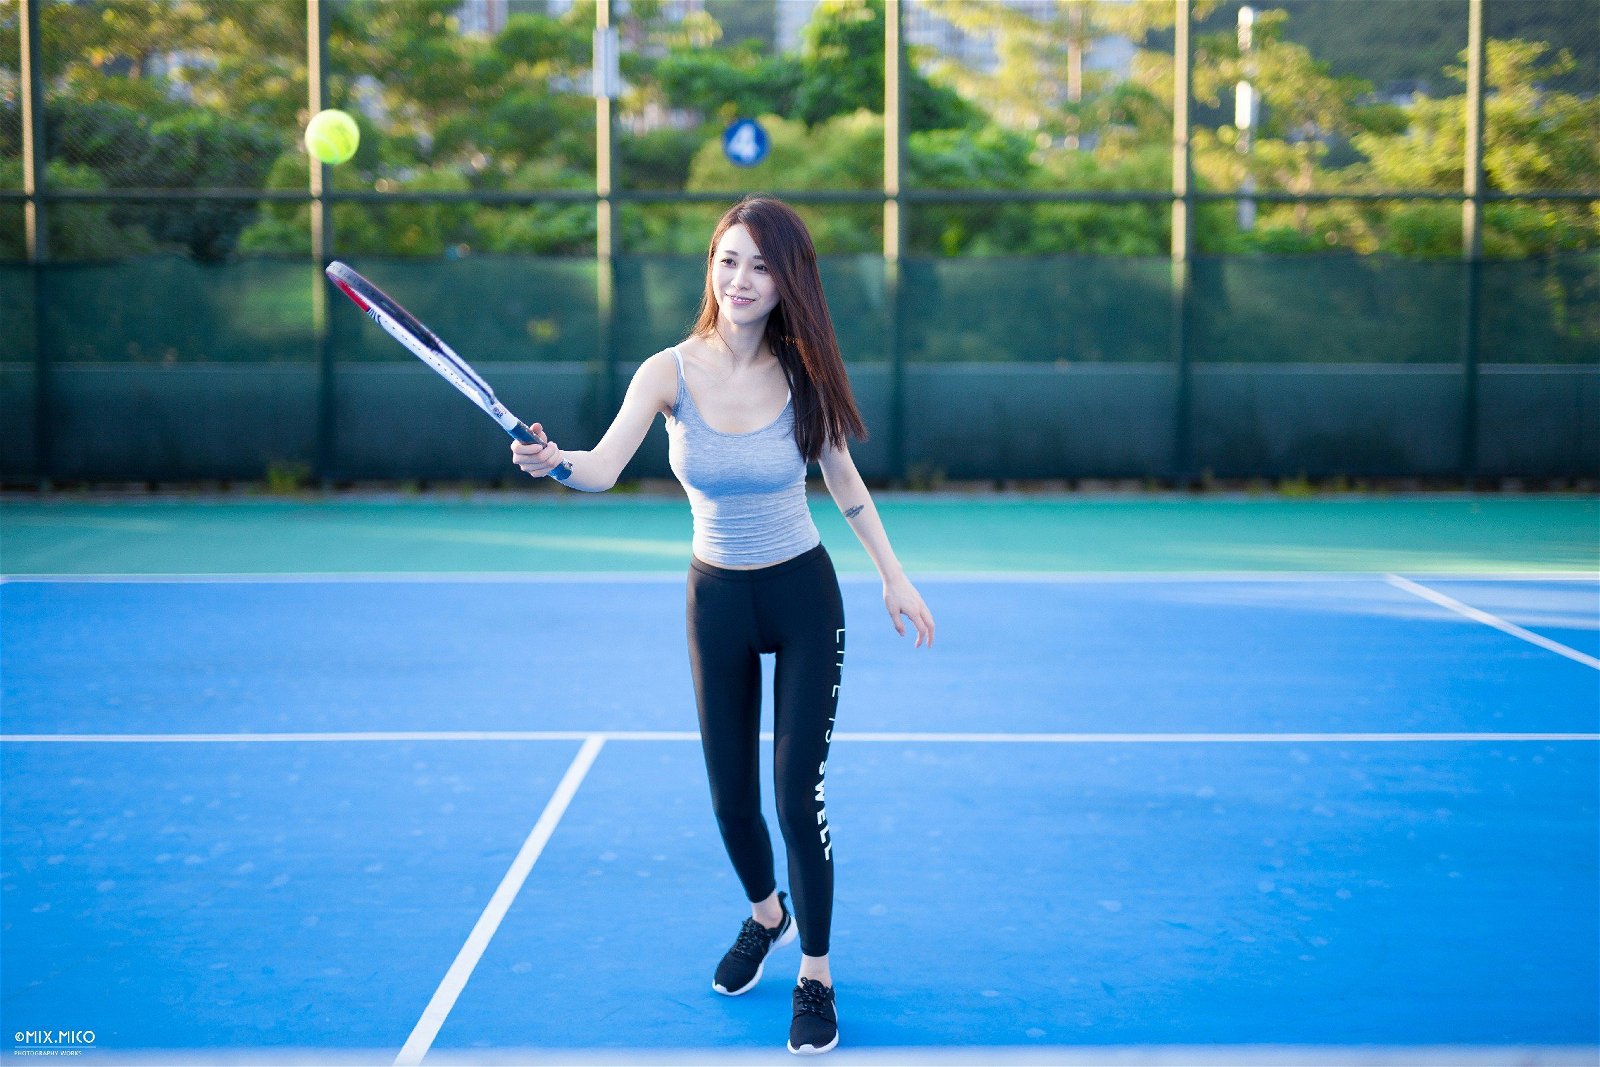 004-tennis-girl (22).jpg